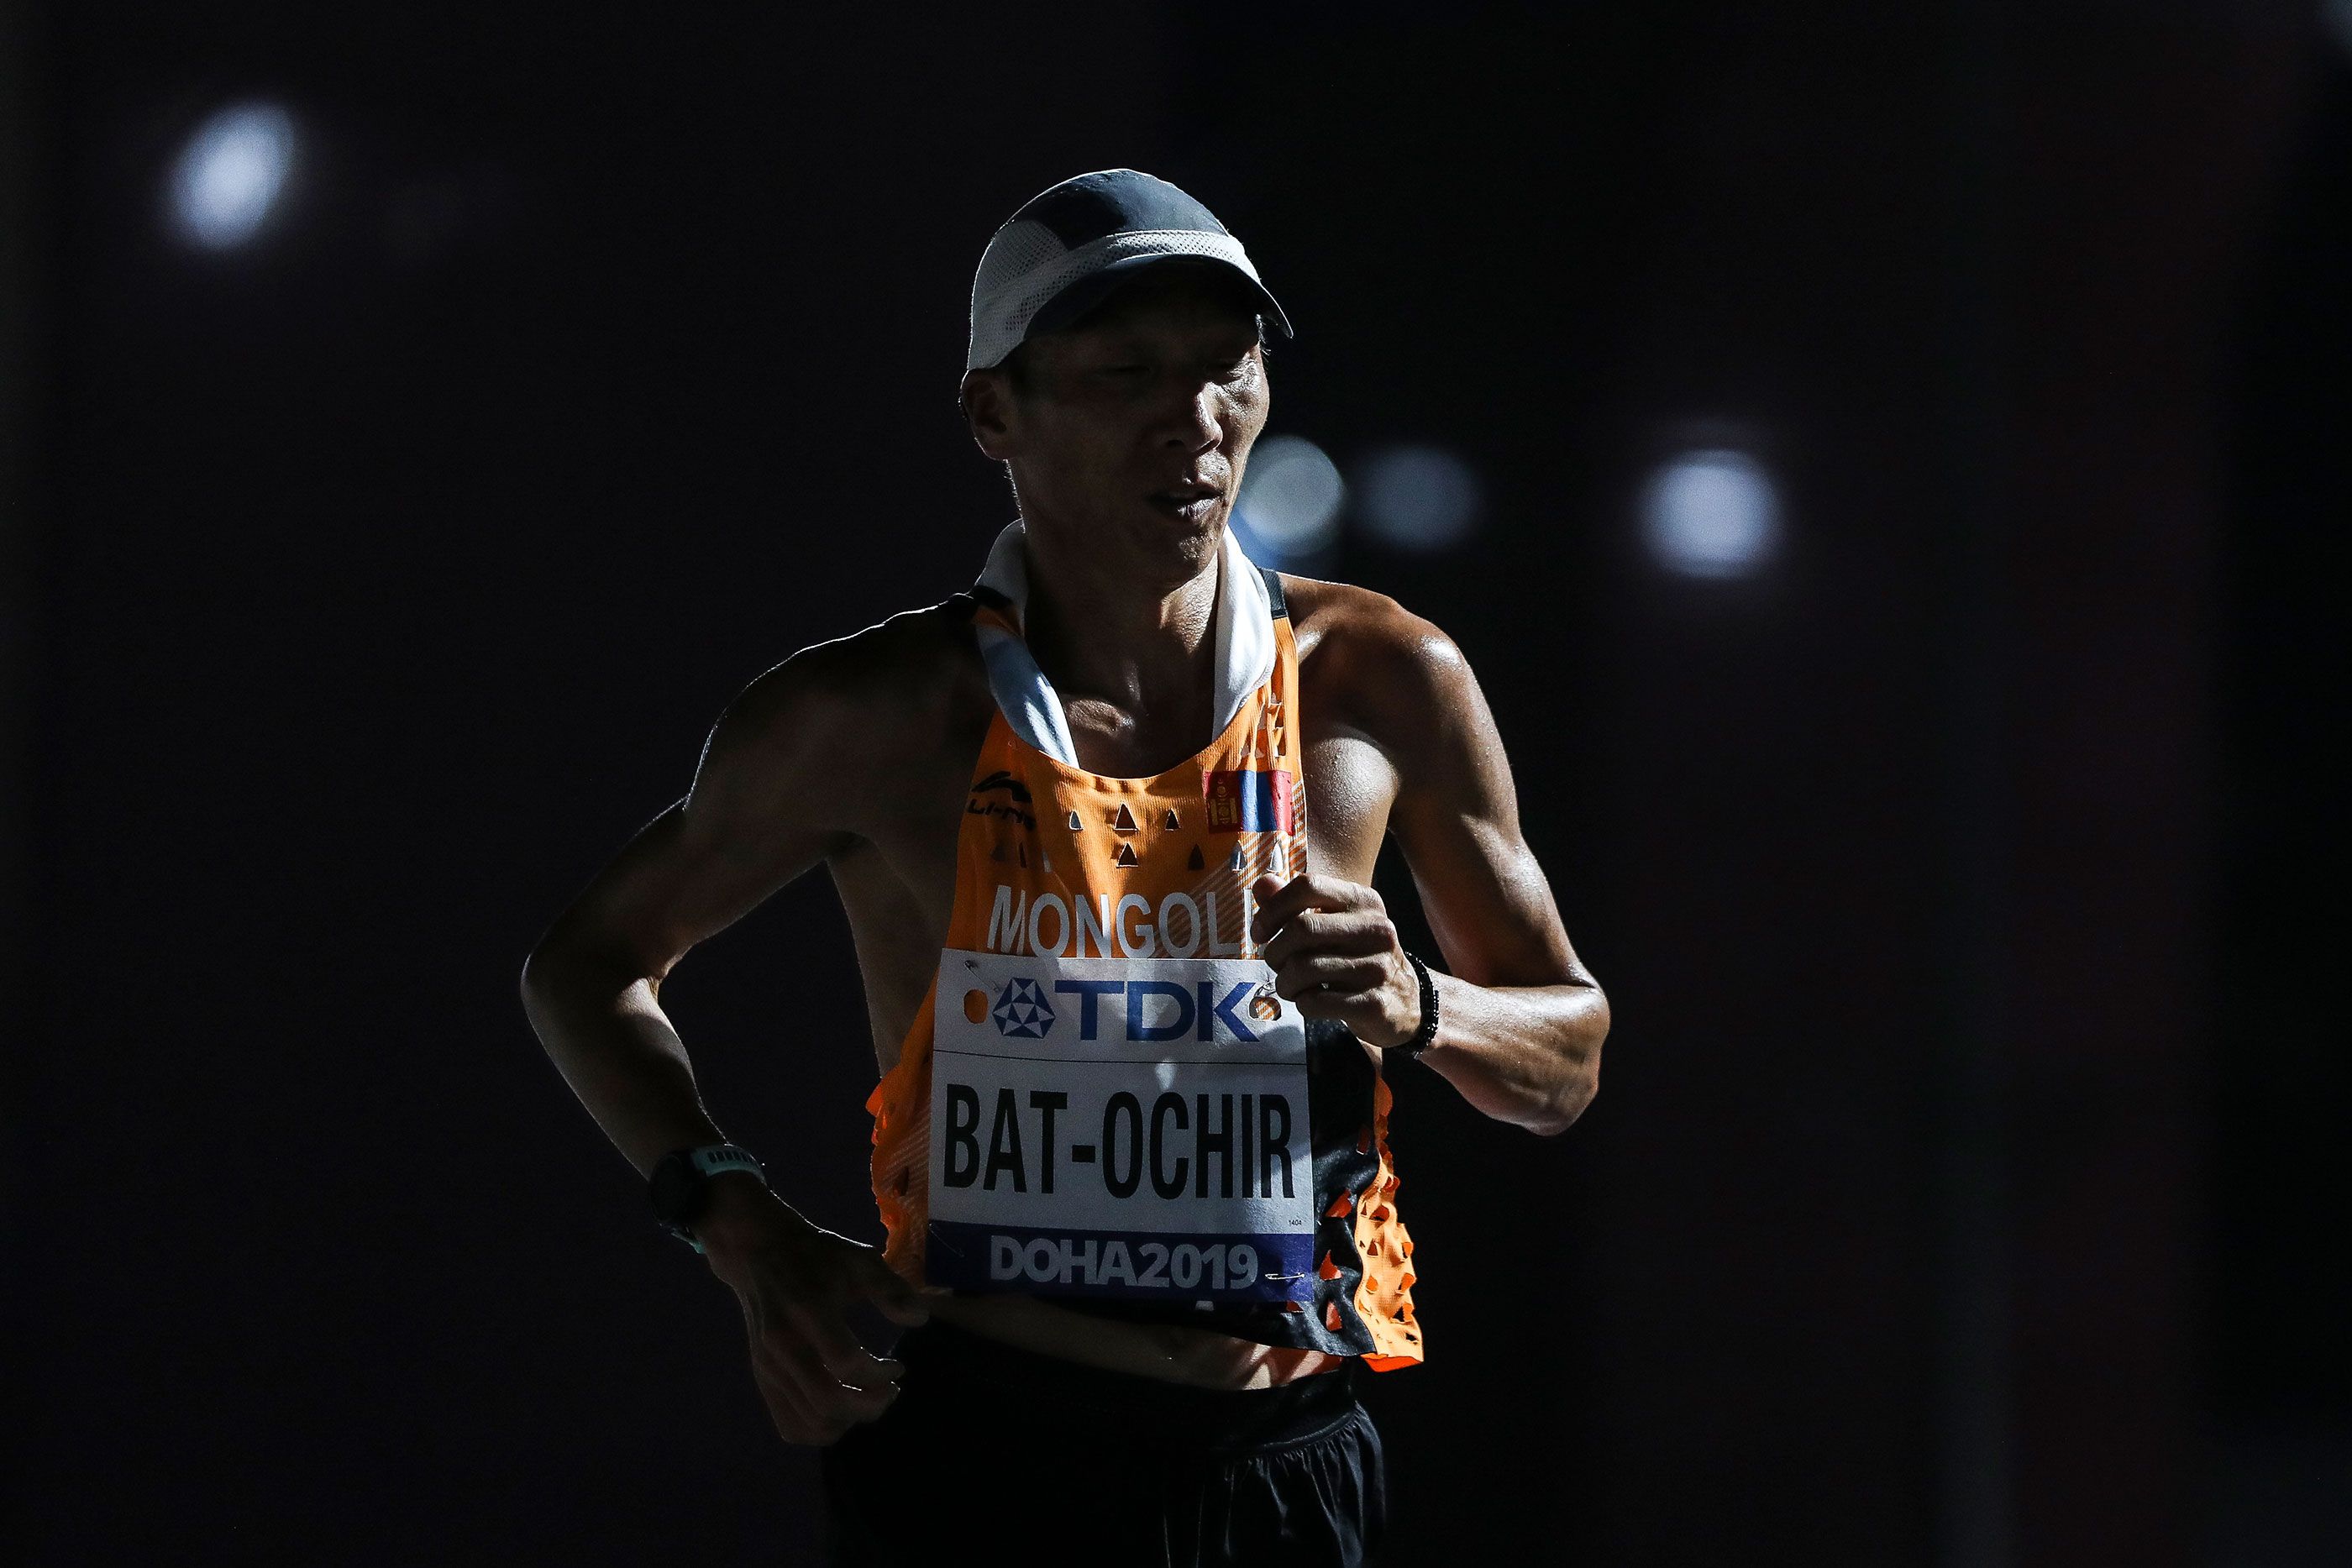 Ser-Od Bat-Ochir at the 2019 World Athletics Championships in Doha